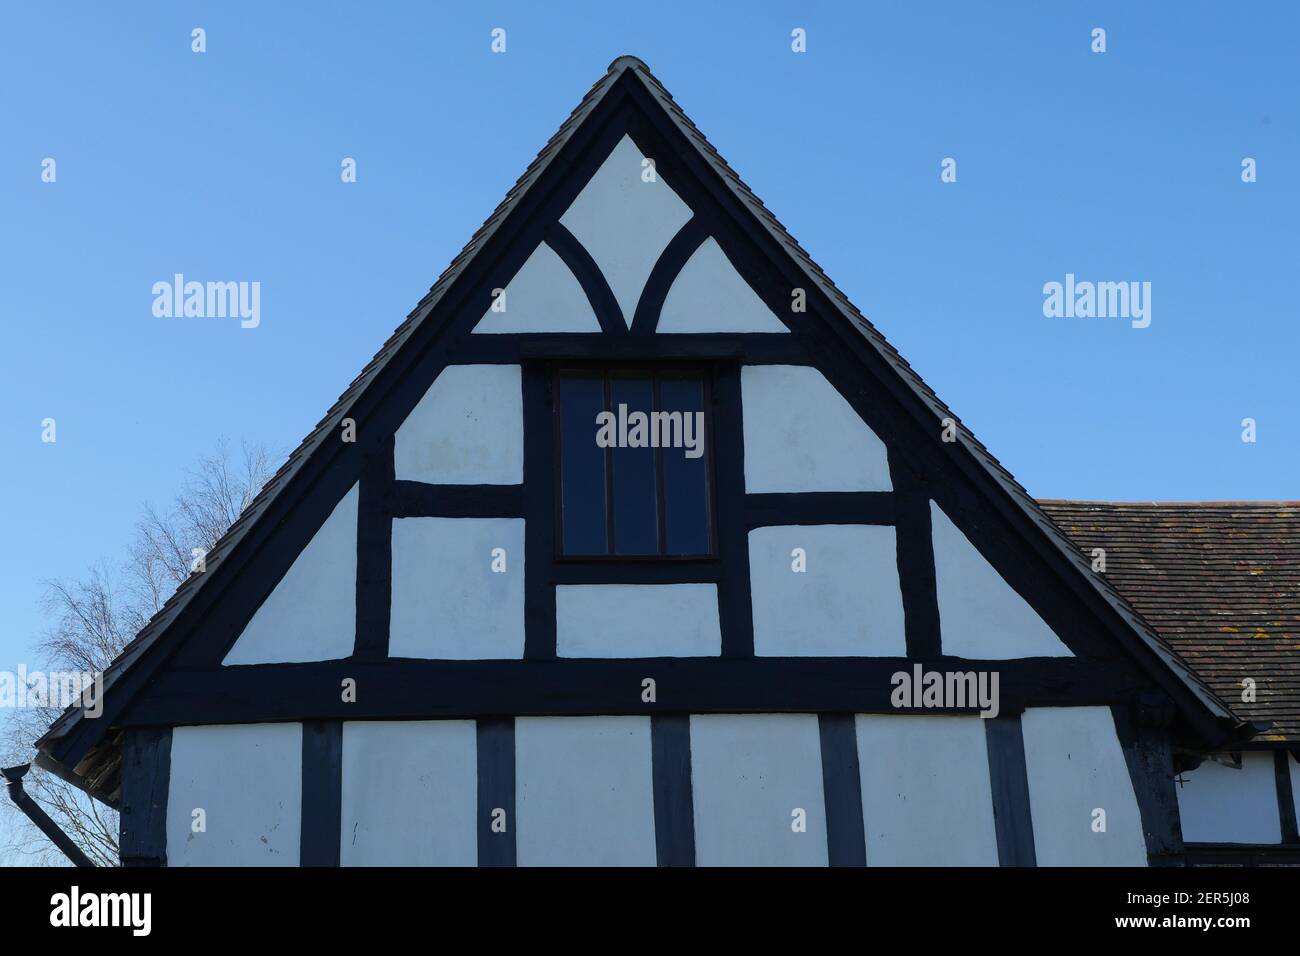 Legno bianco e nero incorniciato periodo medievale Casa, tetto Gable con finestra, antico inglese tradizionale edificio dal Medioevo Foto Stock